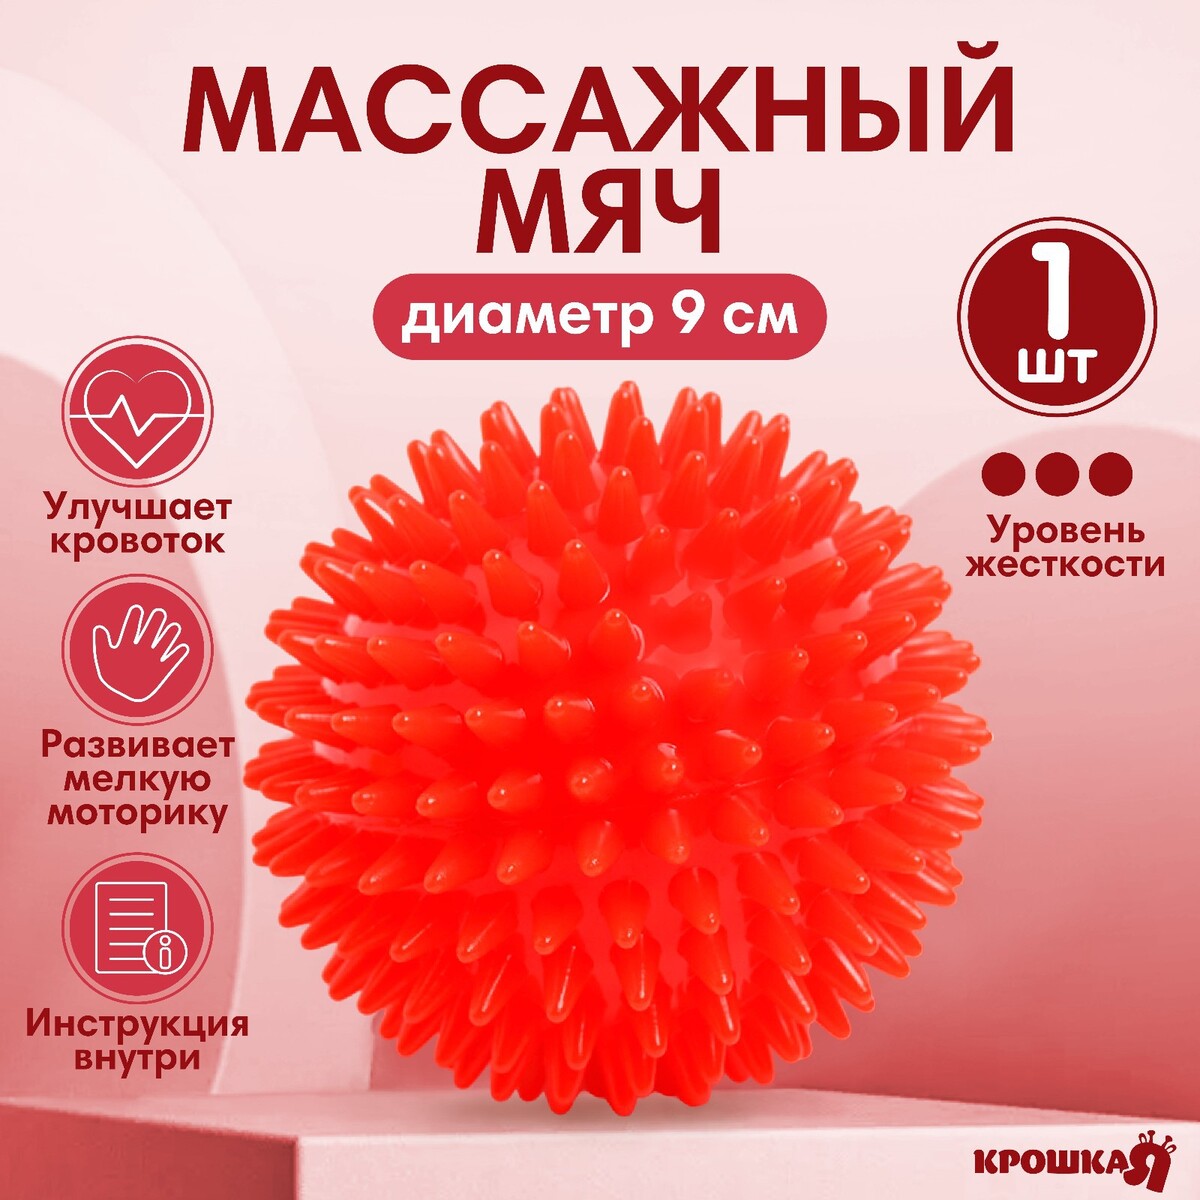 Мяч массажный ø9 см., цвет красный, крошка я gymnic массажный мяч reflexball 8 см